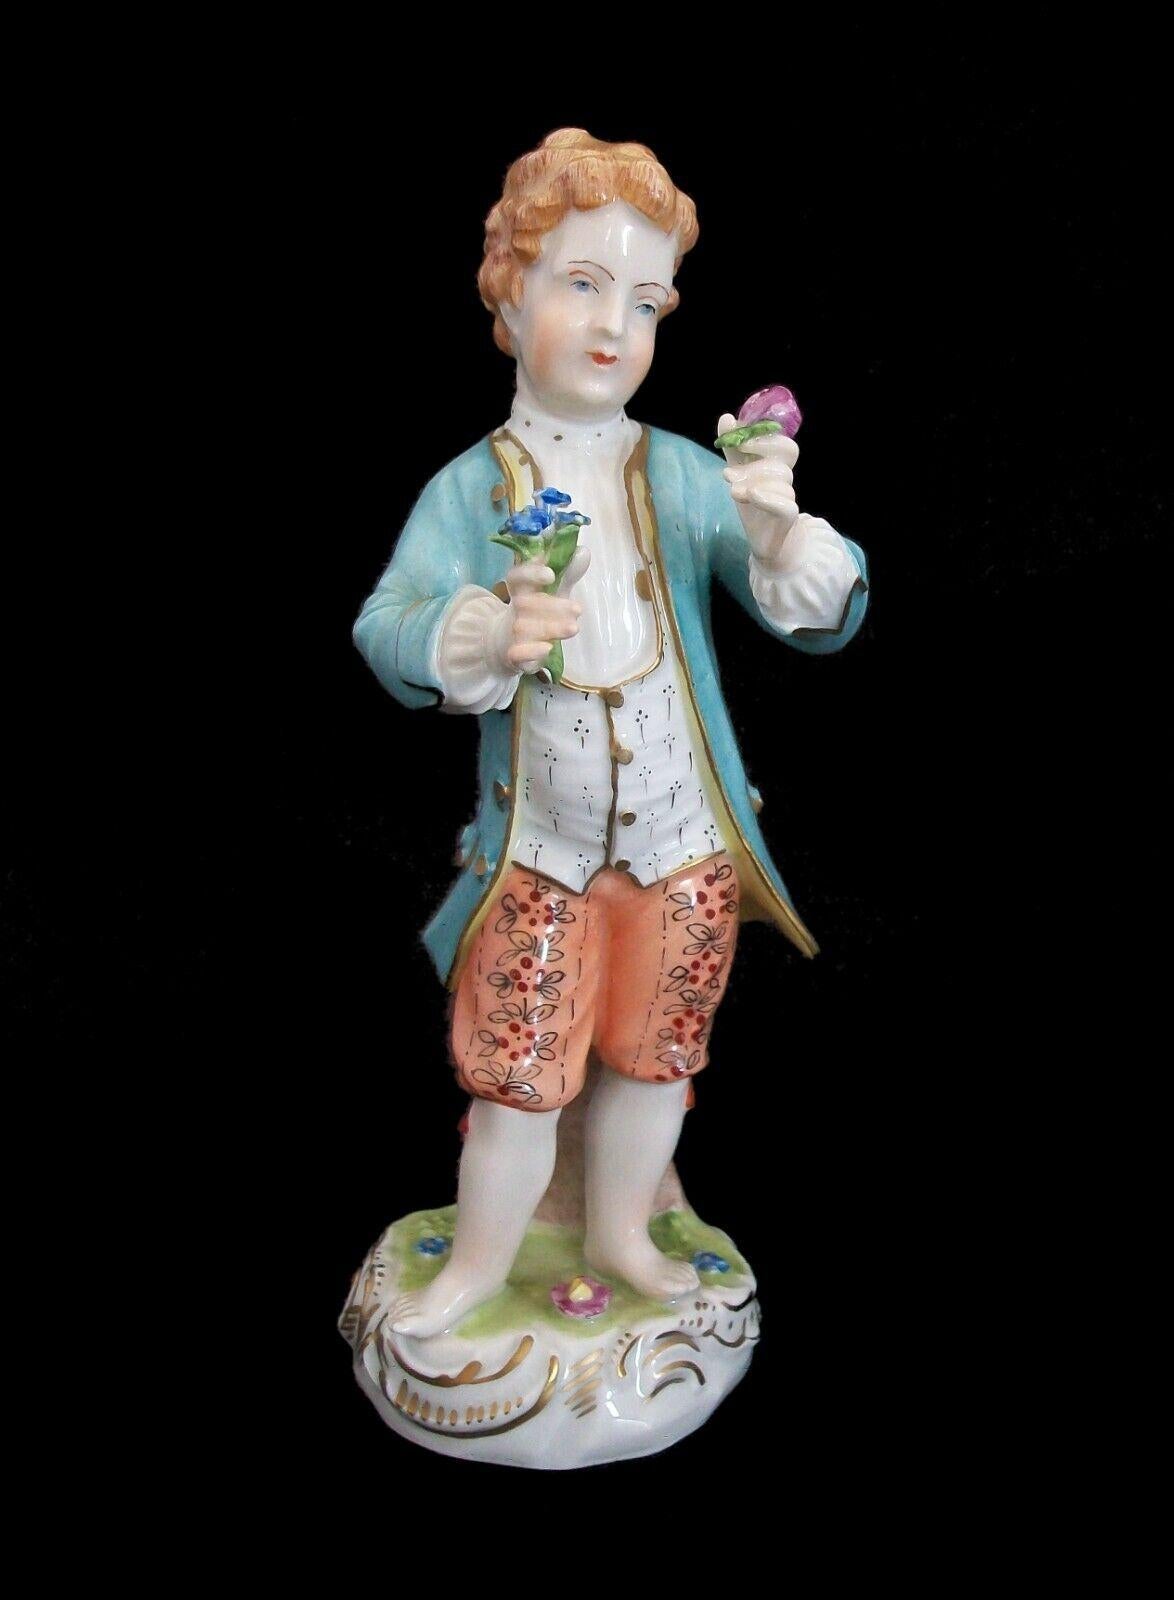 CARL THIEME (Fabrique / Fabricant) - Potschappel (Village / Lieu) - Ancienne figurine en porcelaine de Dresde peinte à la main, décorée et dorée représentant un gentleman en train de faire la cour dans des vêtements de style XVIIIe siècle - signée